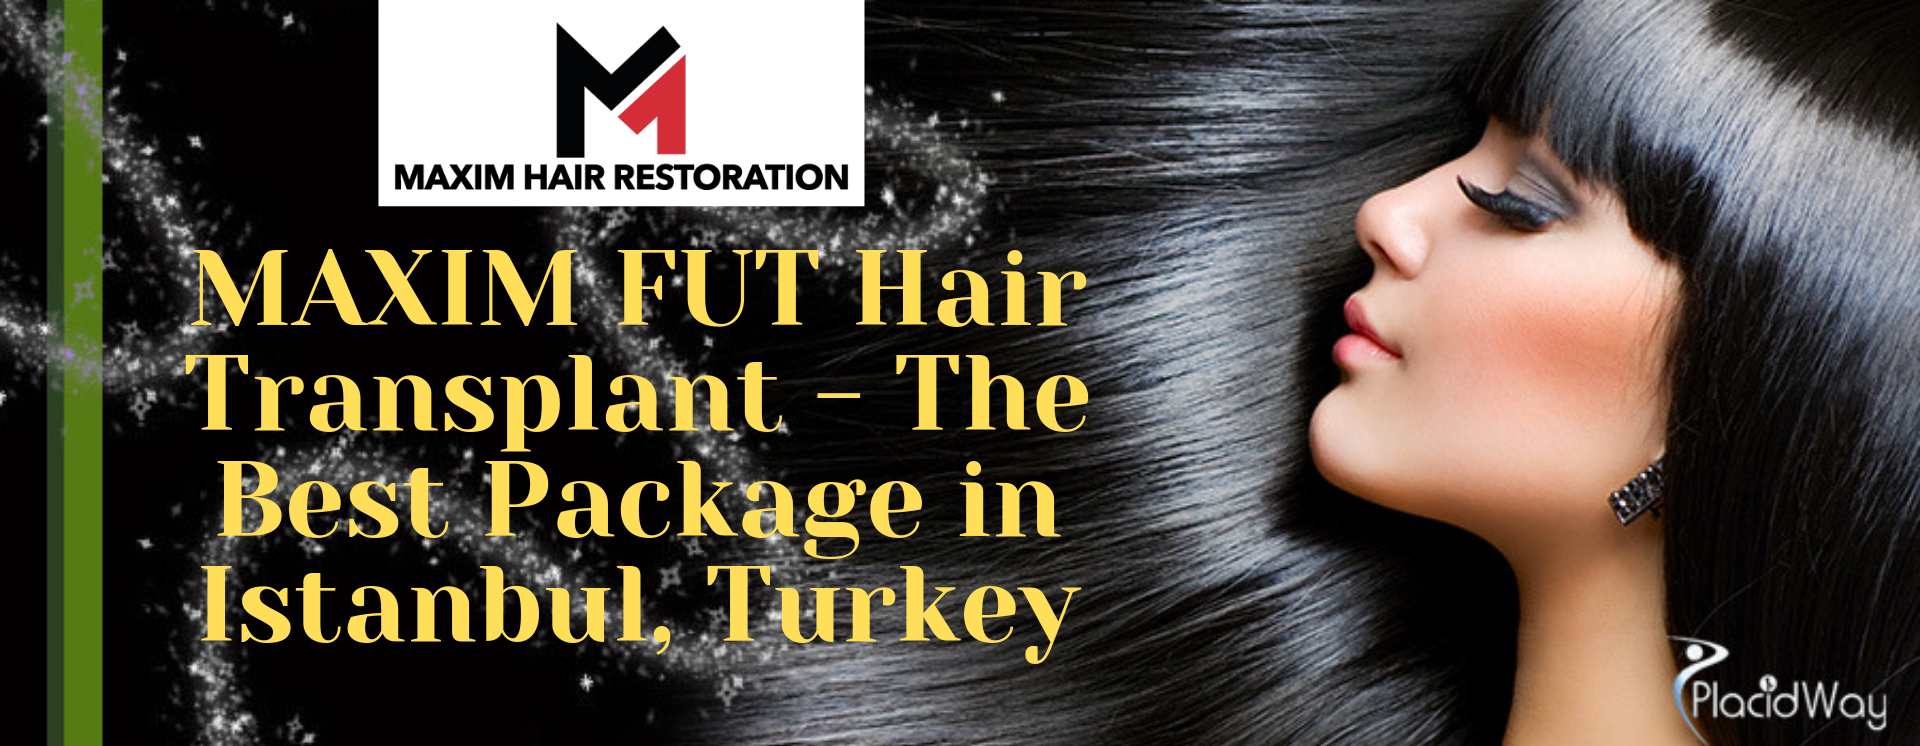 FUT Hair Transplant in Istanbul, Turkey